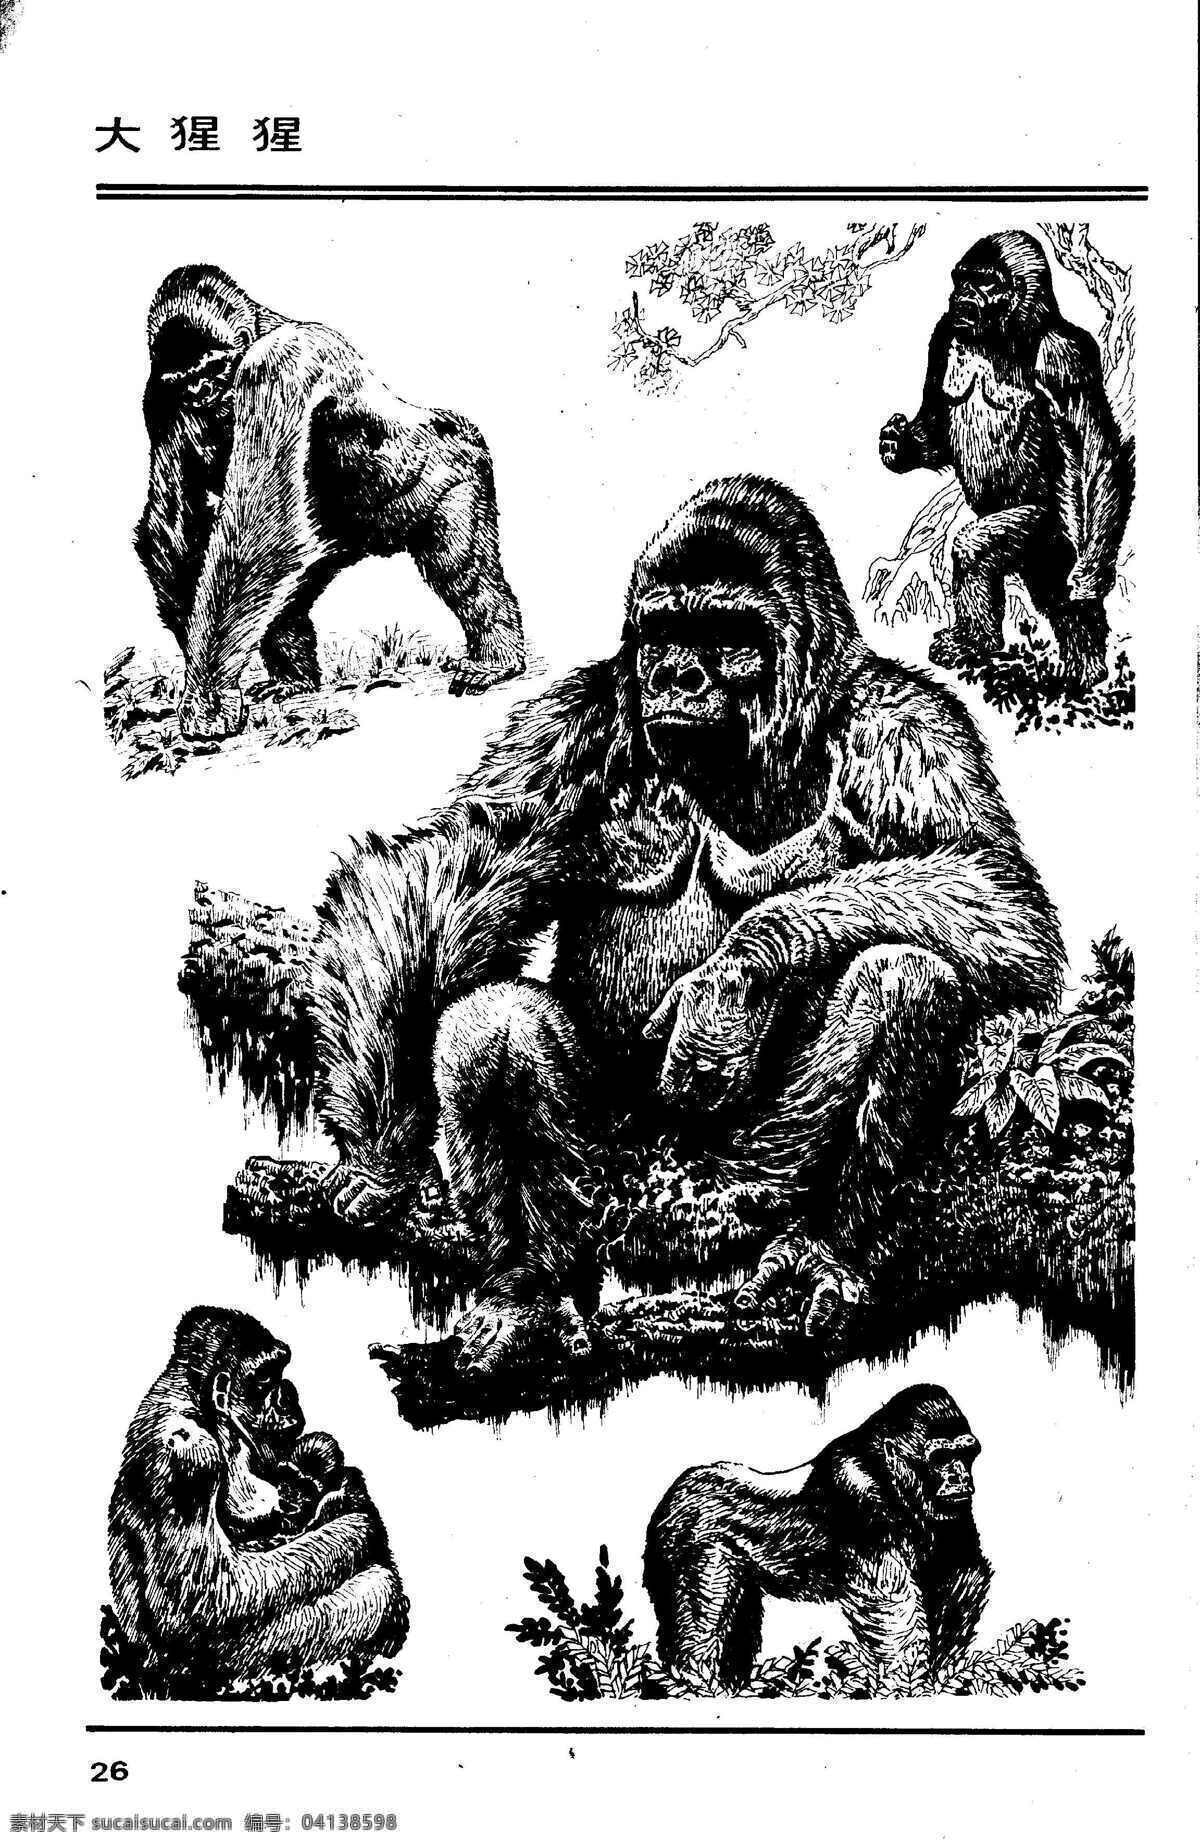 百兽图26 大猩猩 百兽 兽 家禽 猛兽 动物 白描 线描 绘画 美术 禽兽 野生动物 猴 猴子 画兽谱 猩猩 金刚 生物世界 设计图库